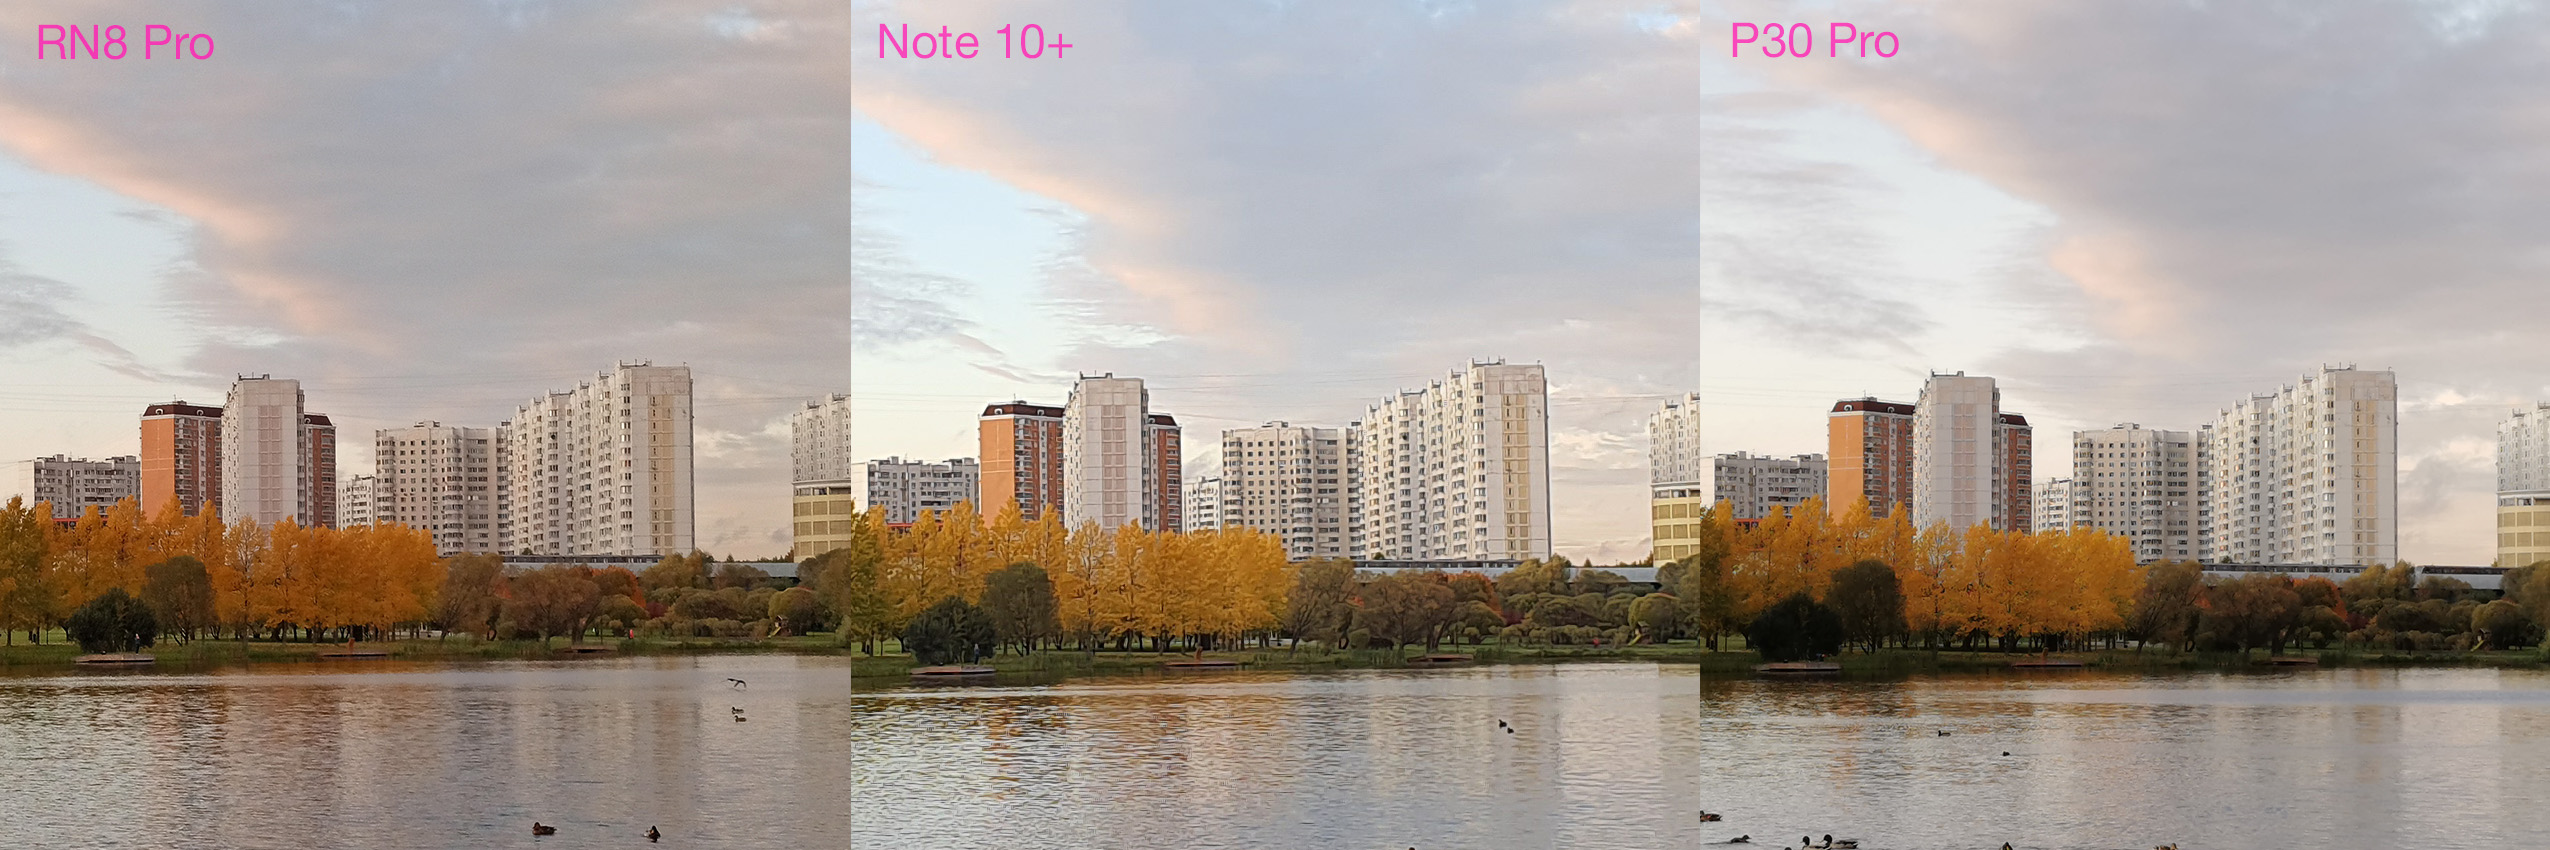 Xiaomi Redmi Note 10 Фото С Камеры